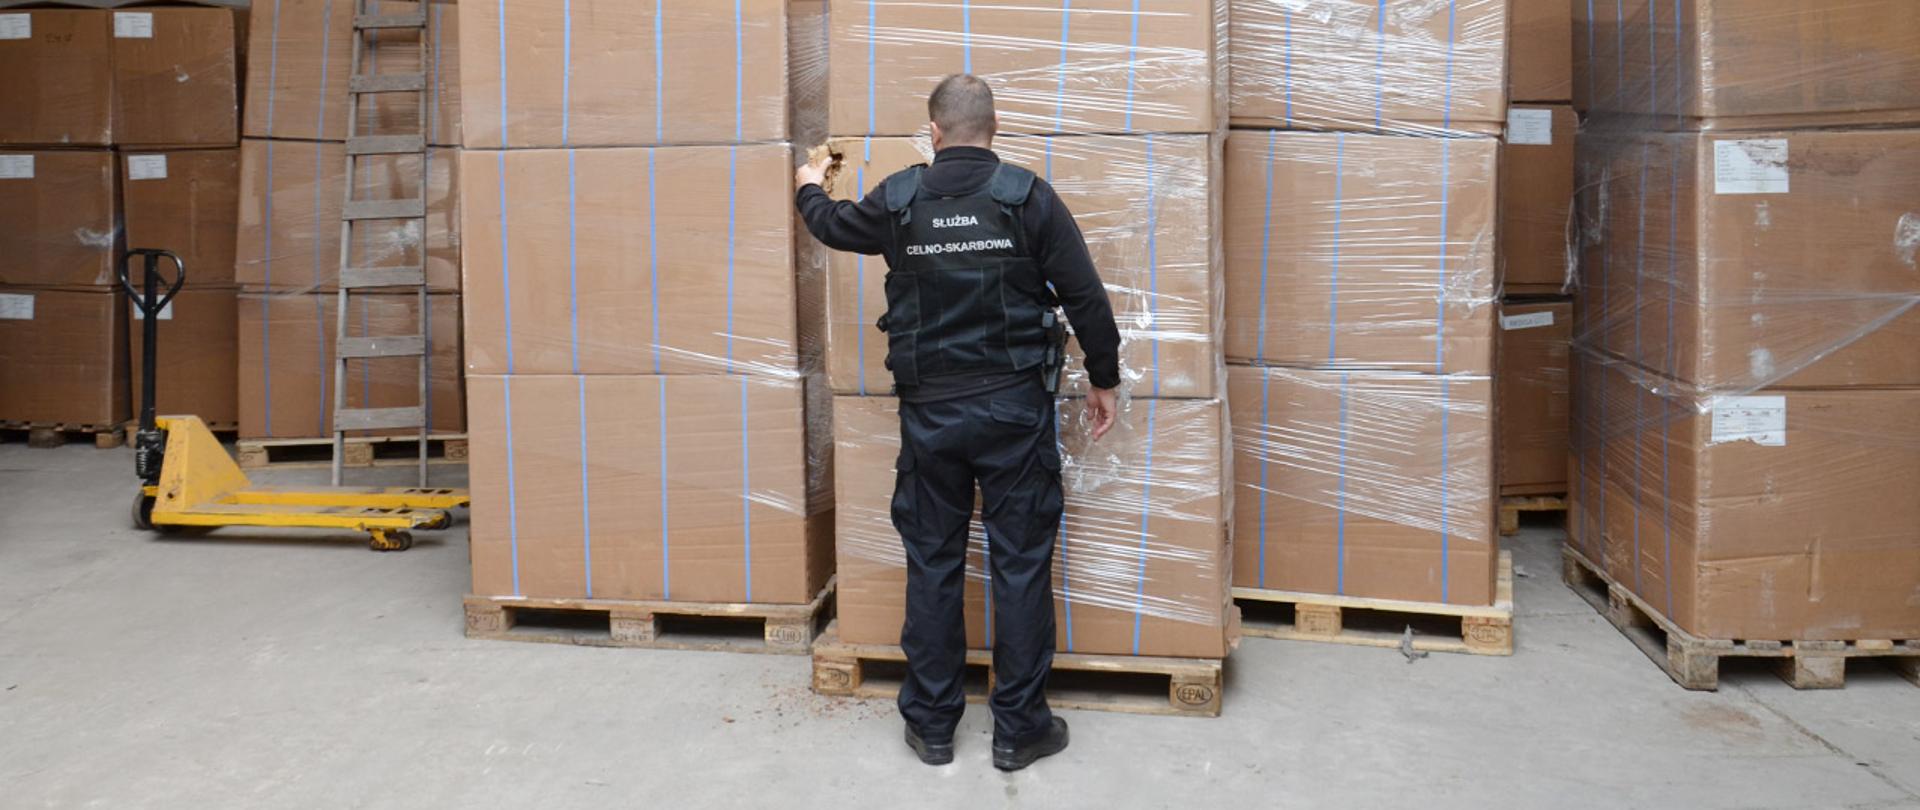 Funkcjonariusz Służby Celno-Skarbowej na tle kartonów z nielegalnym suszem tytoniowym